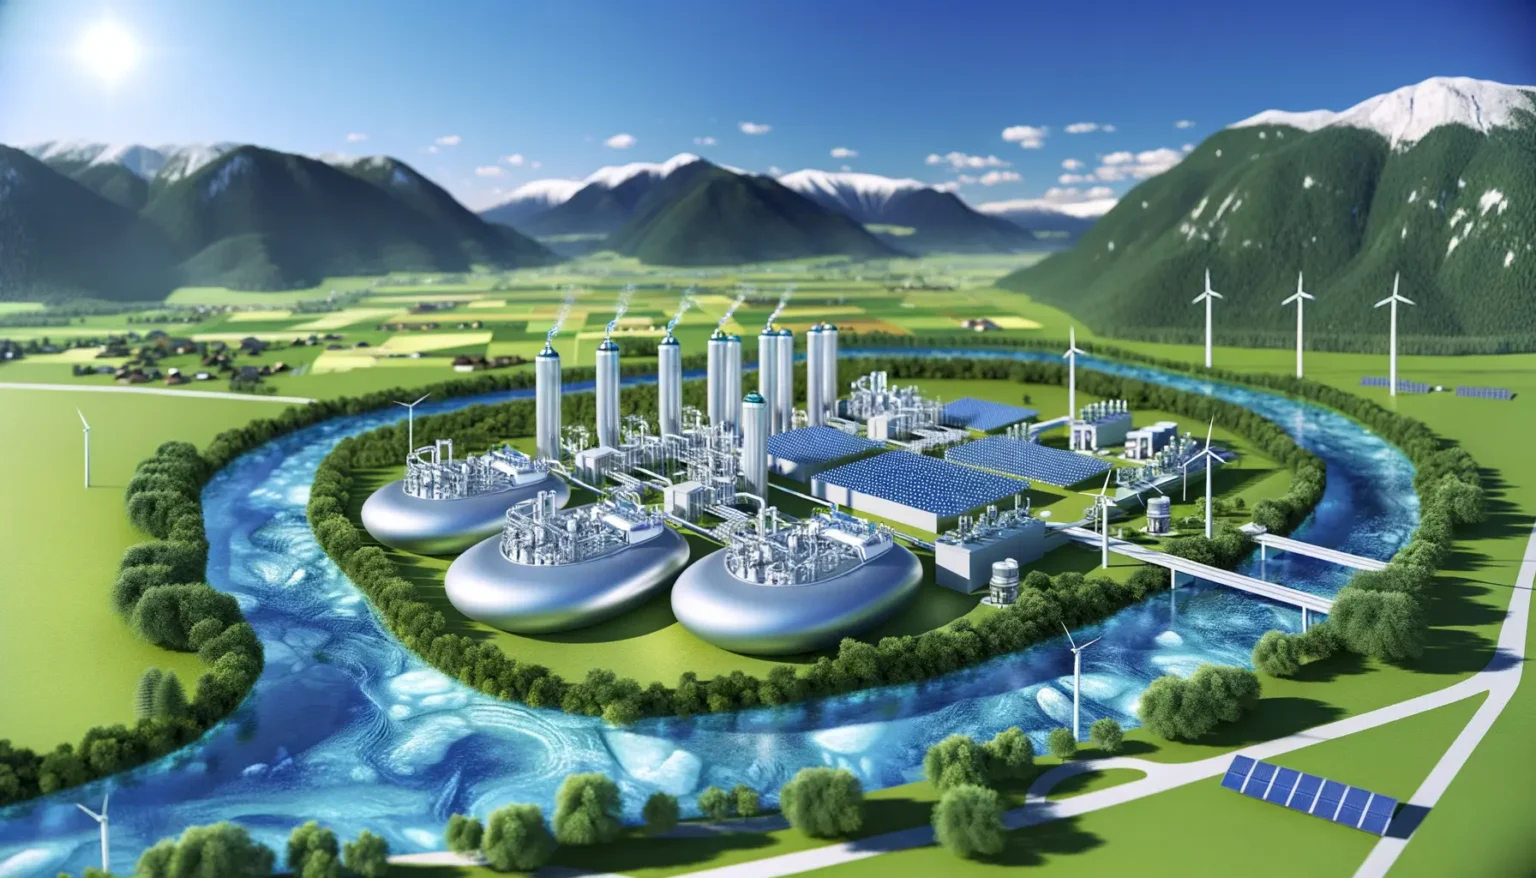 Eine futuristische Darstellung eines Industriekomplexes zur Energiegewinnung in einem grünen Tal, umgeben von Bergen. Der Komplex beinhaltet Windturbinen, Solarfelder und hohe zylindrische Strukturen, die möglicherweise Energieerzeugungsanlagen darstellen, umgeben von einem Fluss, der den Komplex schlängelt.